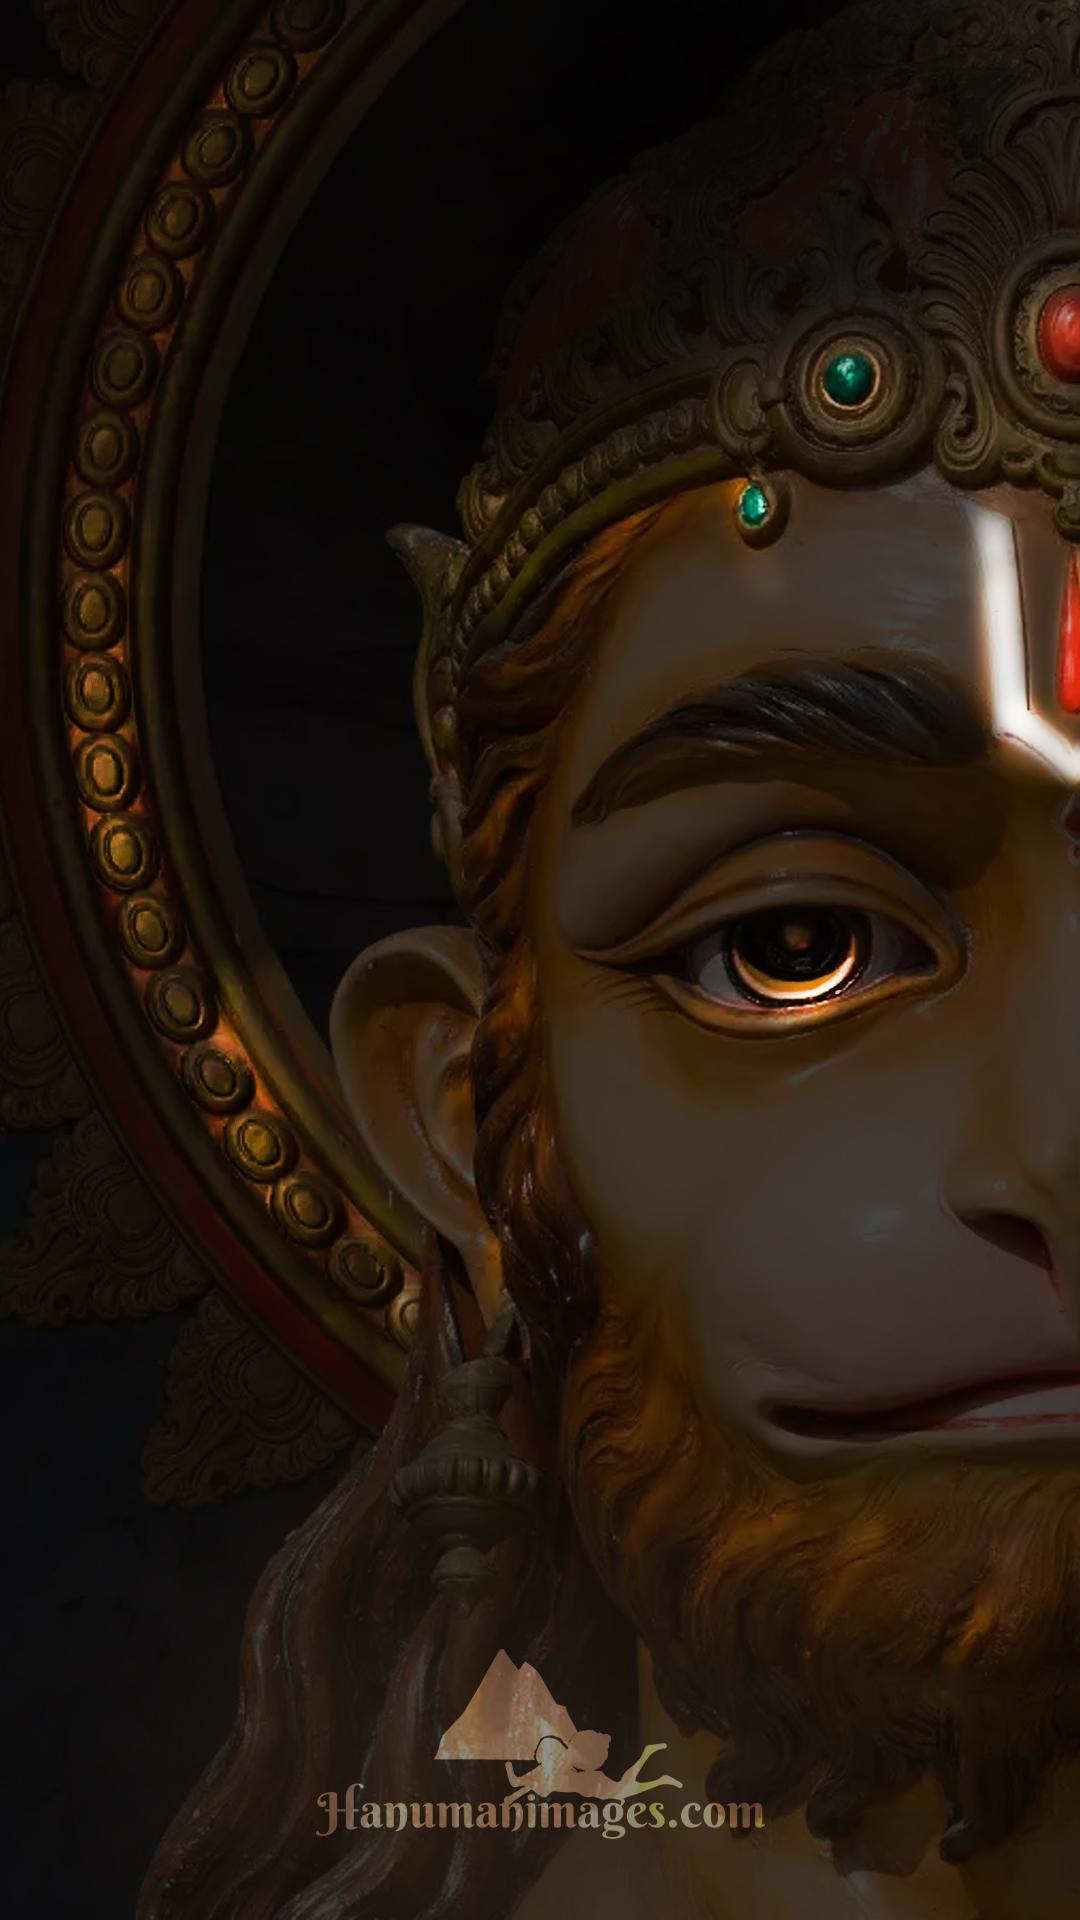 🔥 Lord Hanuman Ji Iphone Wallpaper Download Full HD | Image Free Download